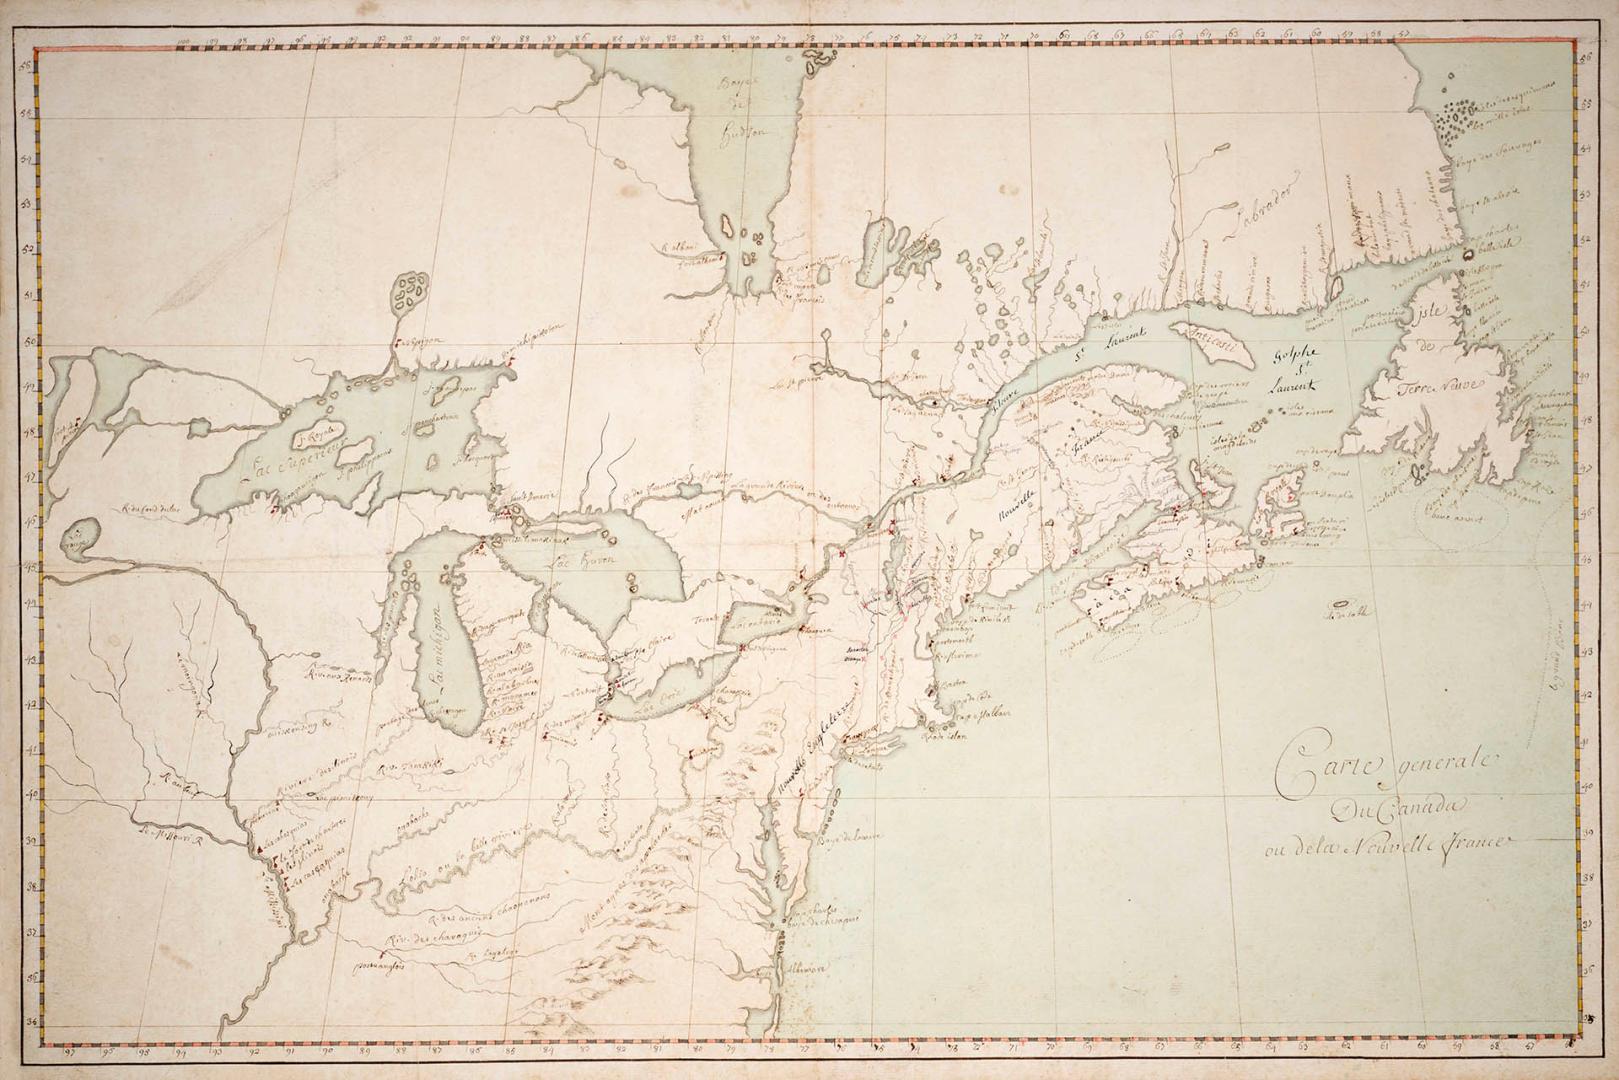 Carte générale du Canada ou de la Nouvelle France, 1753